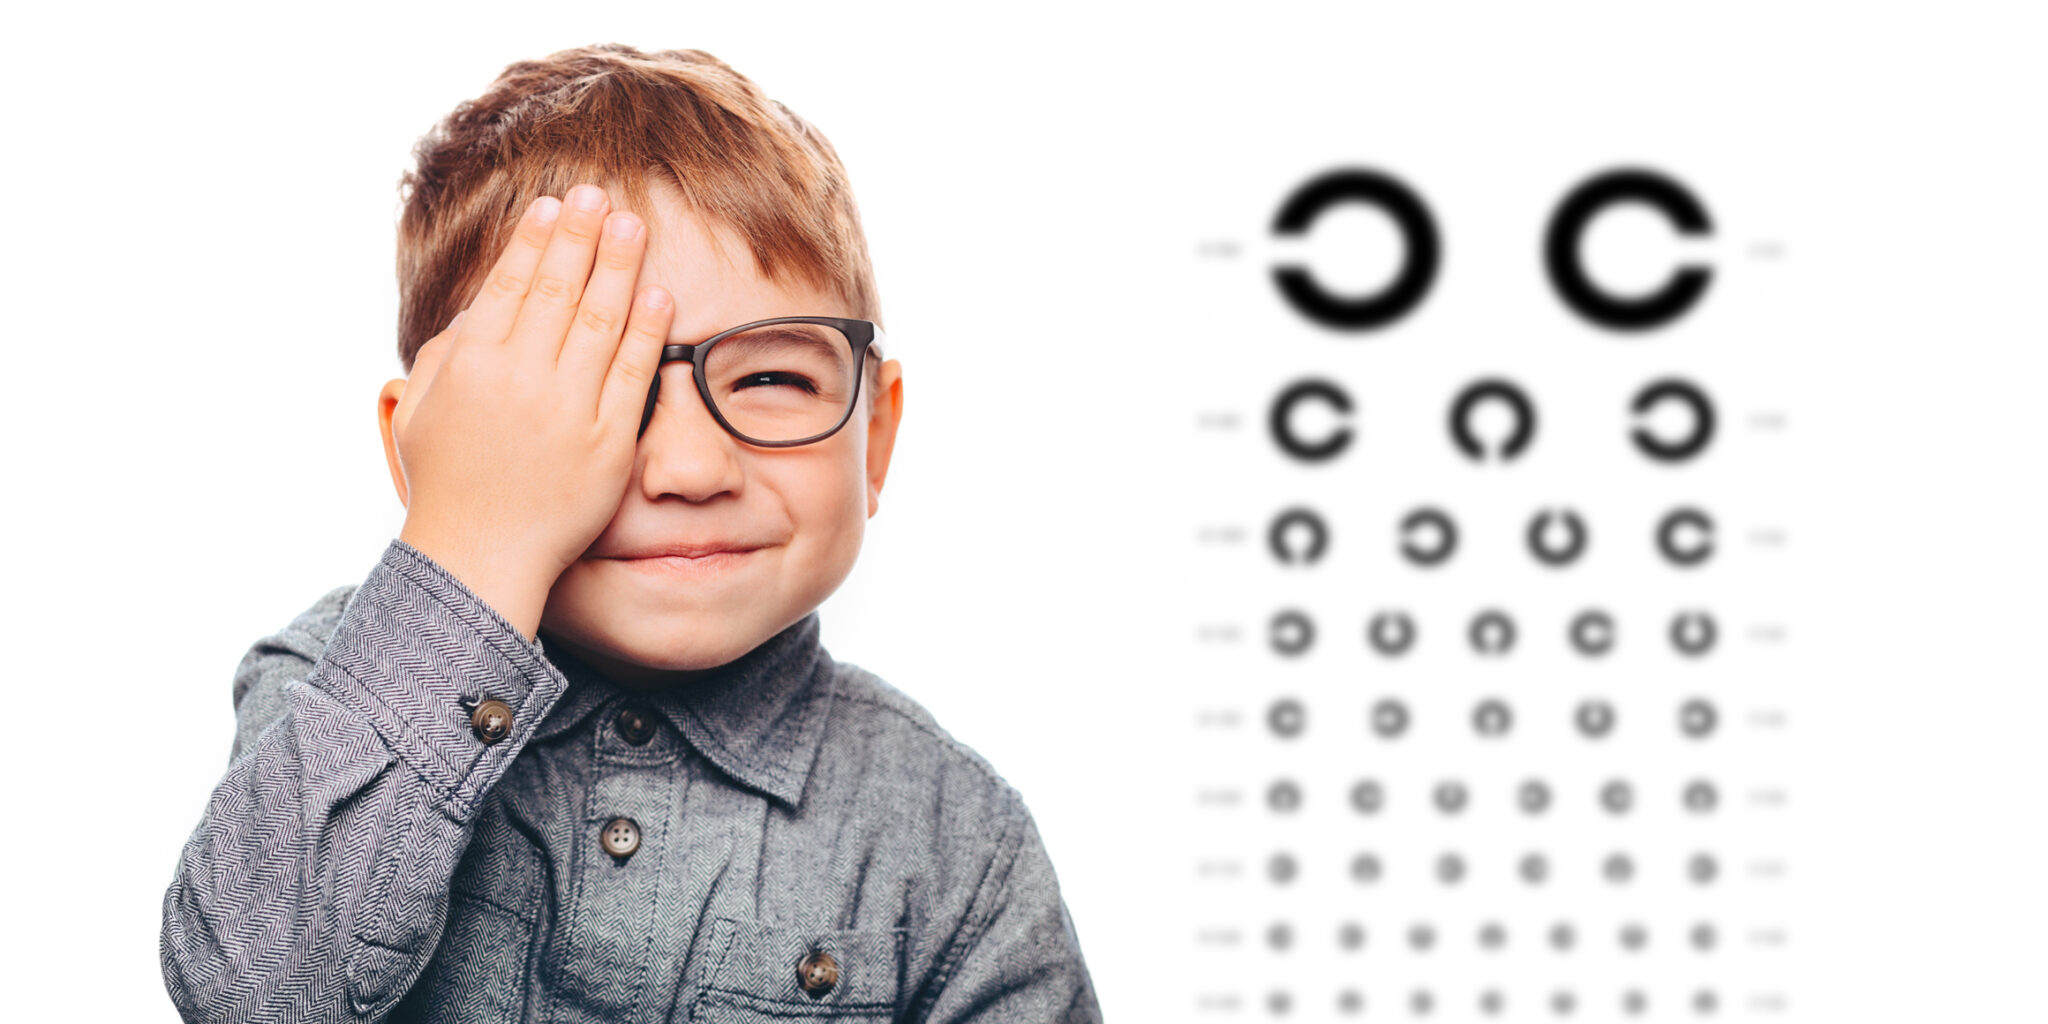 “Grande parte dos problemas de visão é diagnosticada nos rastreios”